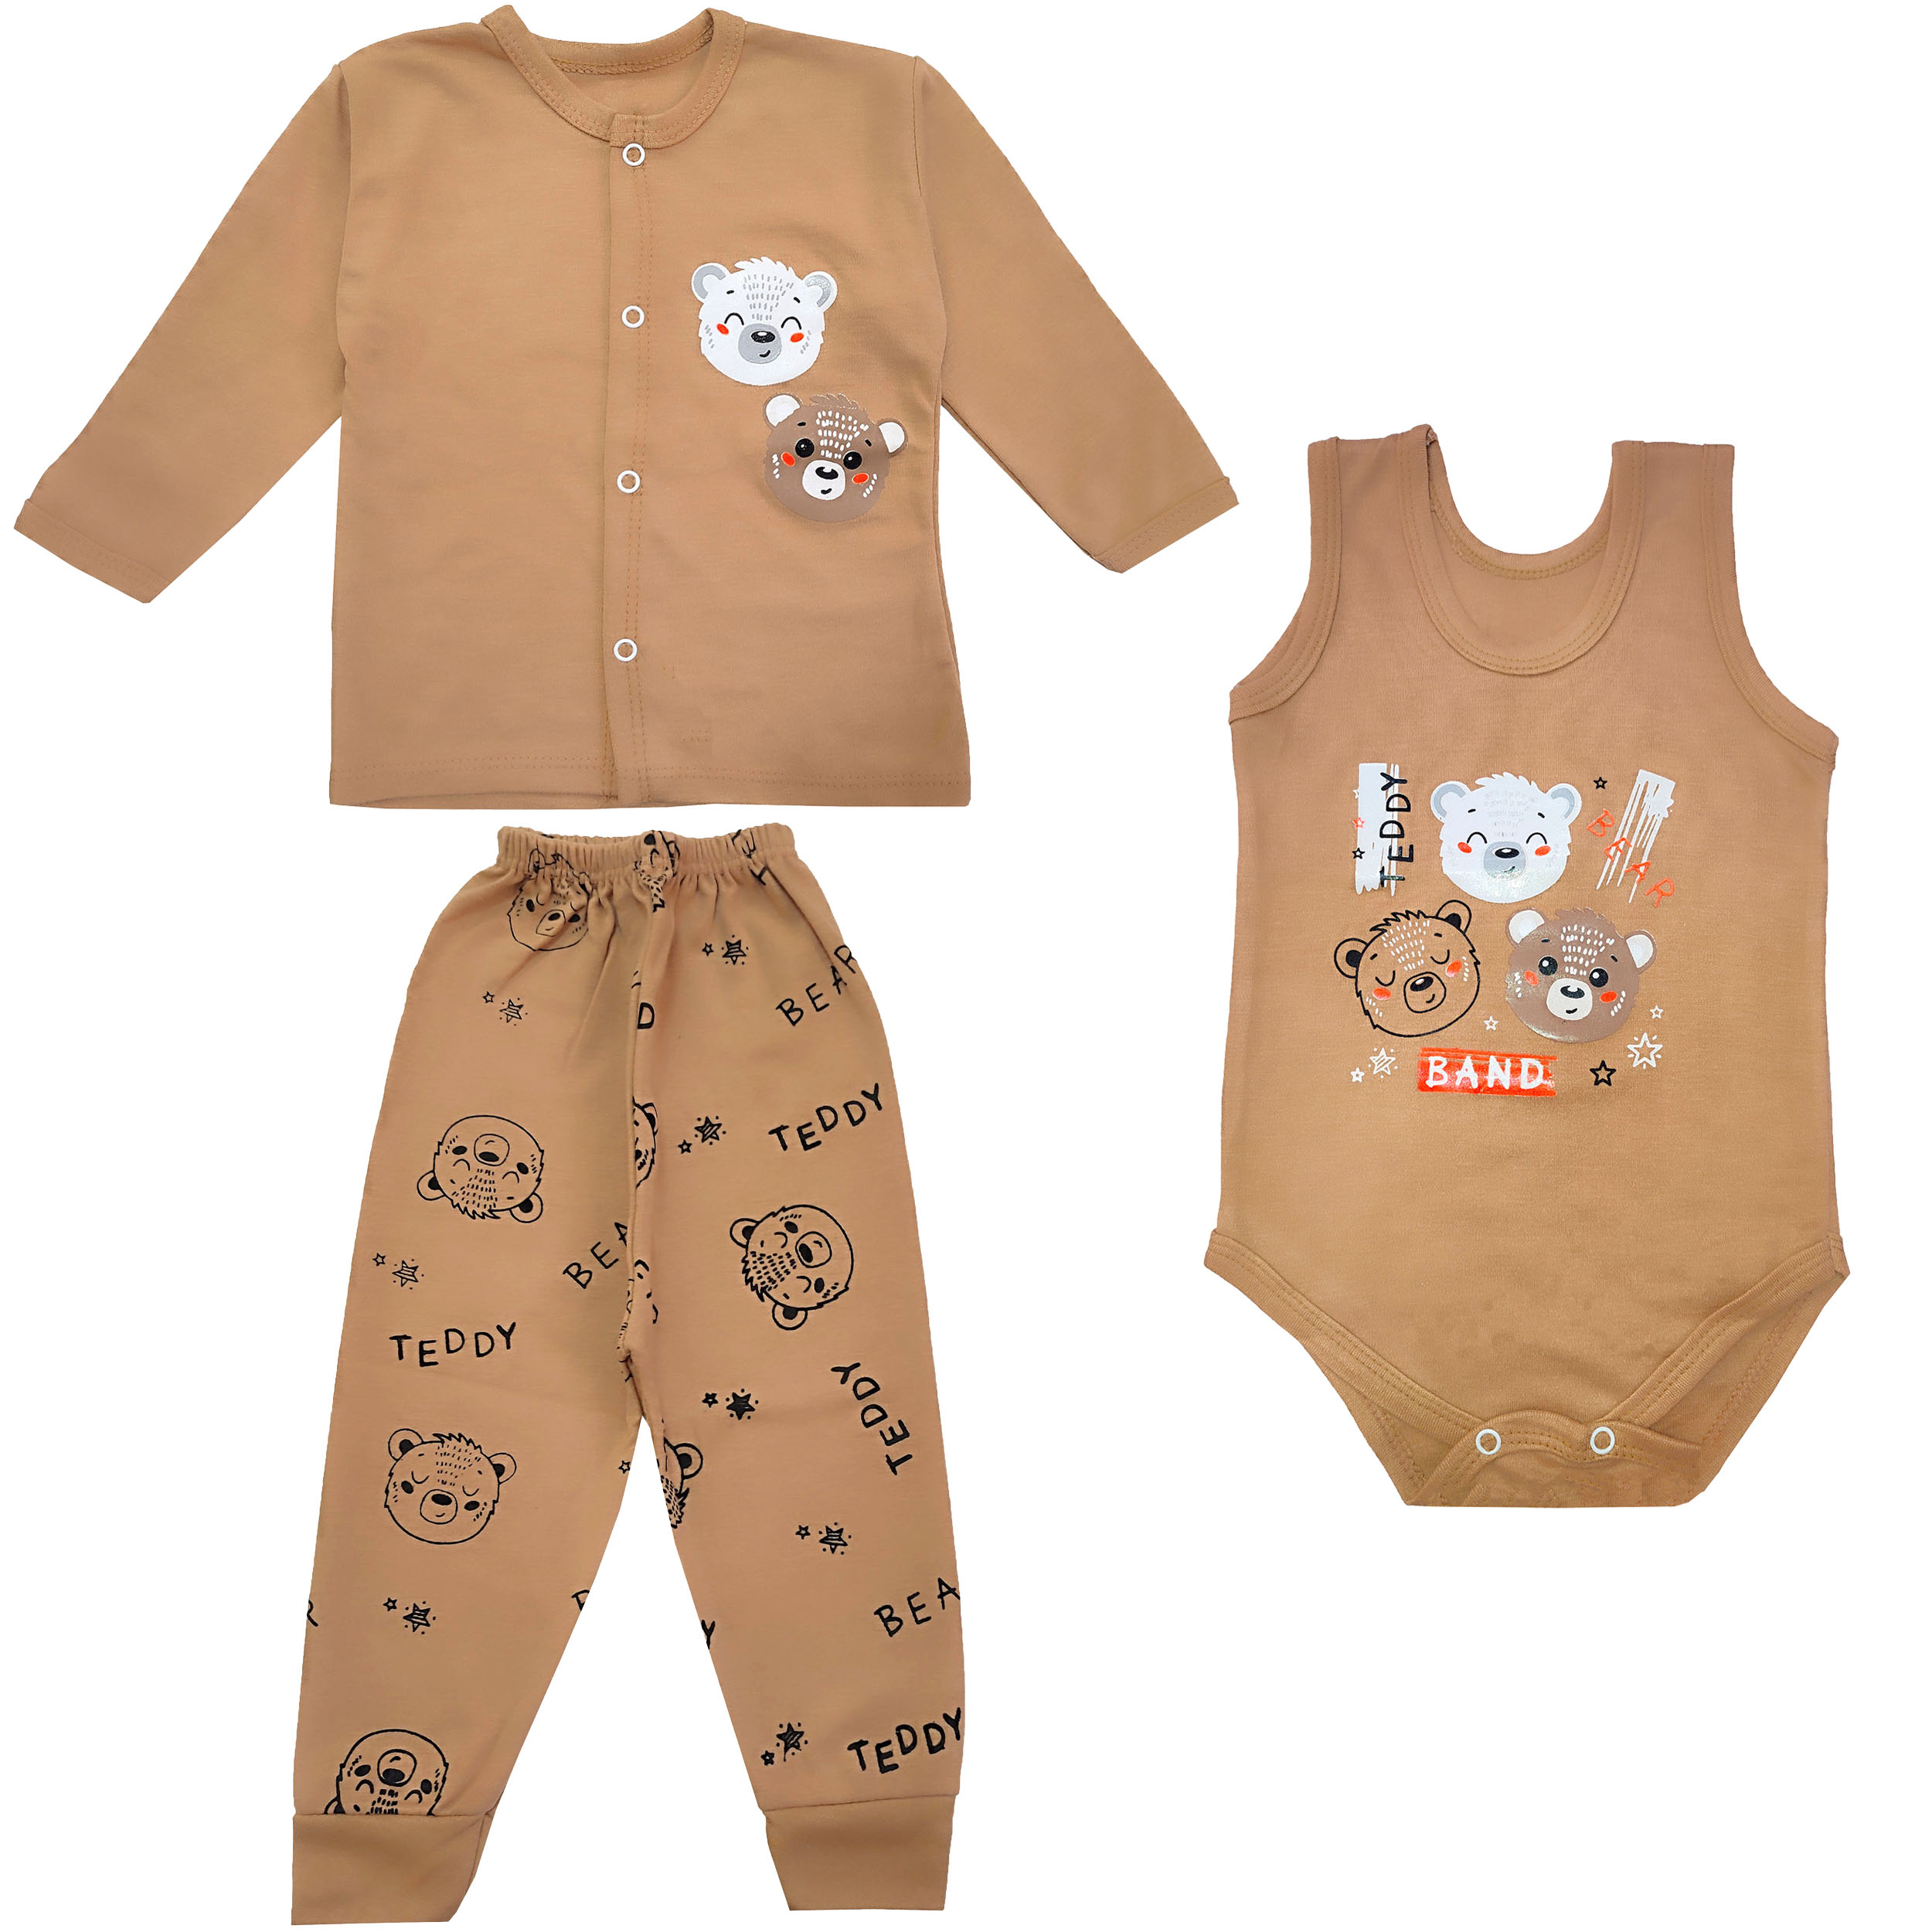 ✓ قیمت و مشخصات ست 3 تکه لباس نوزادی مدل کله خرس کد 3857 رنگ نسکافه ای -زیراکو ✓